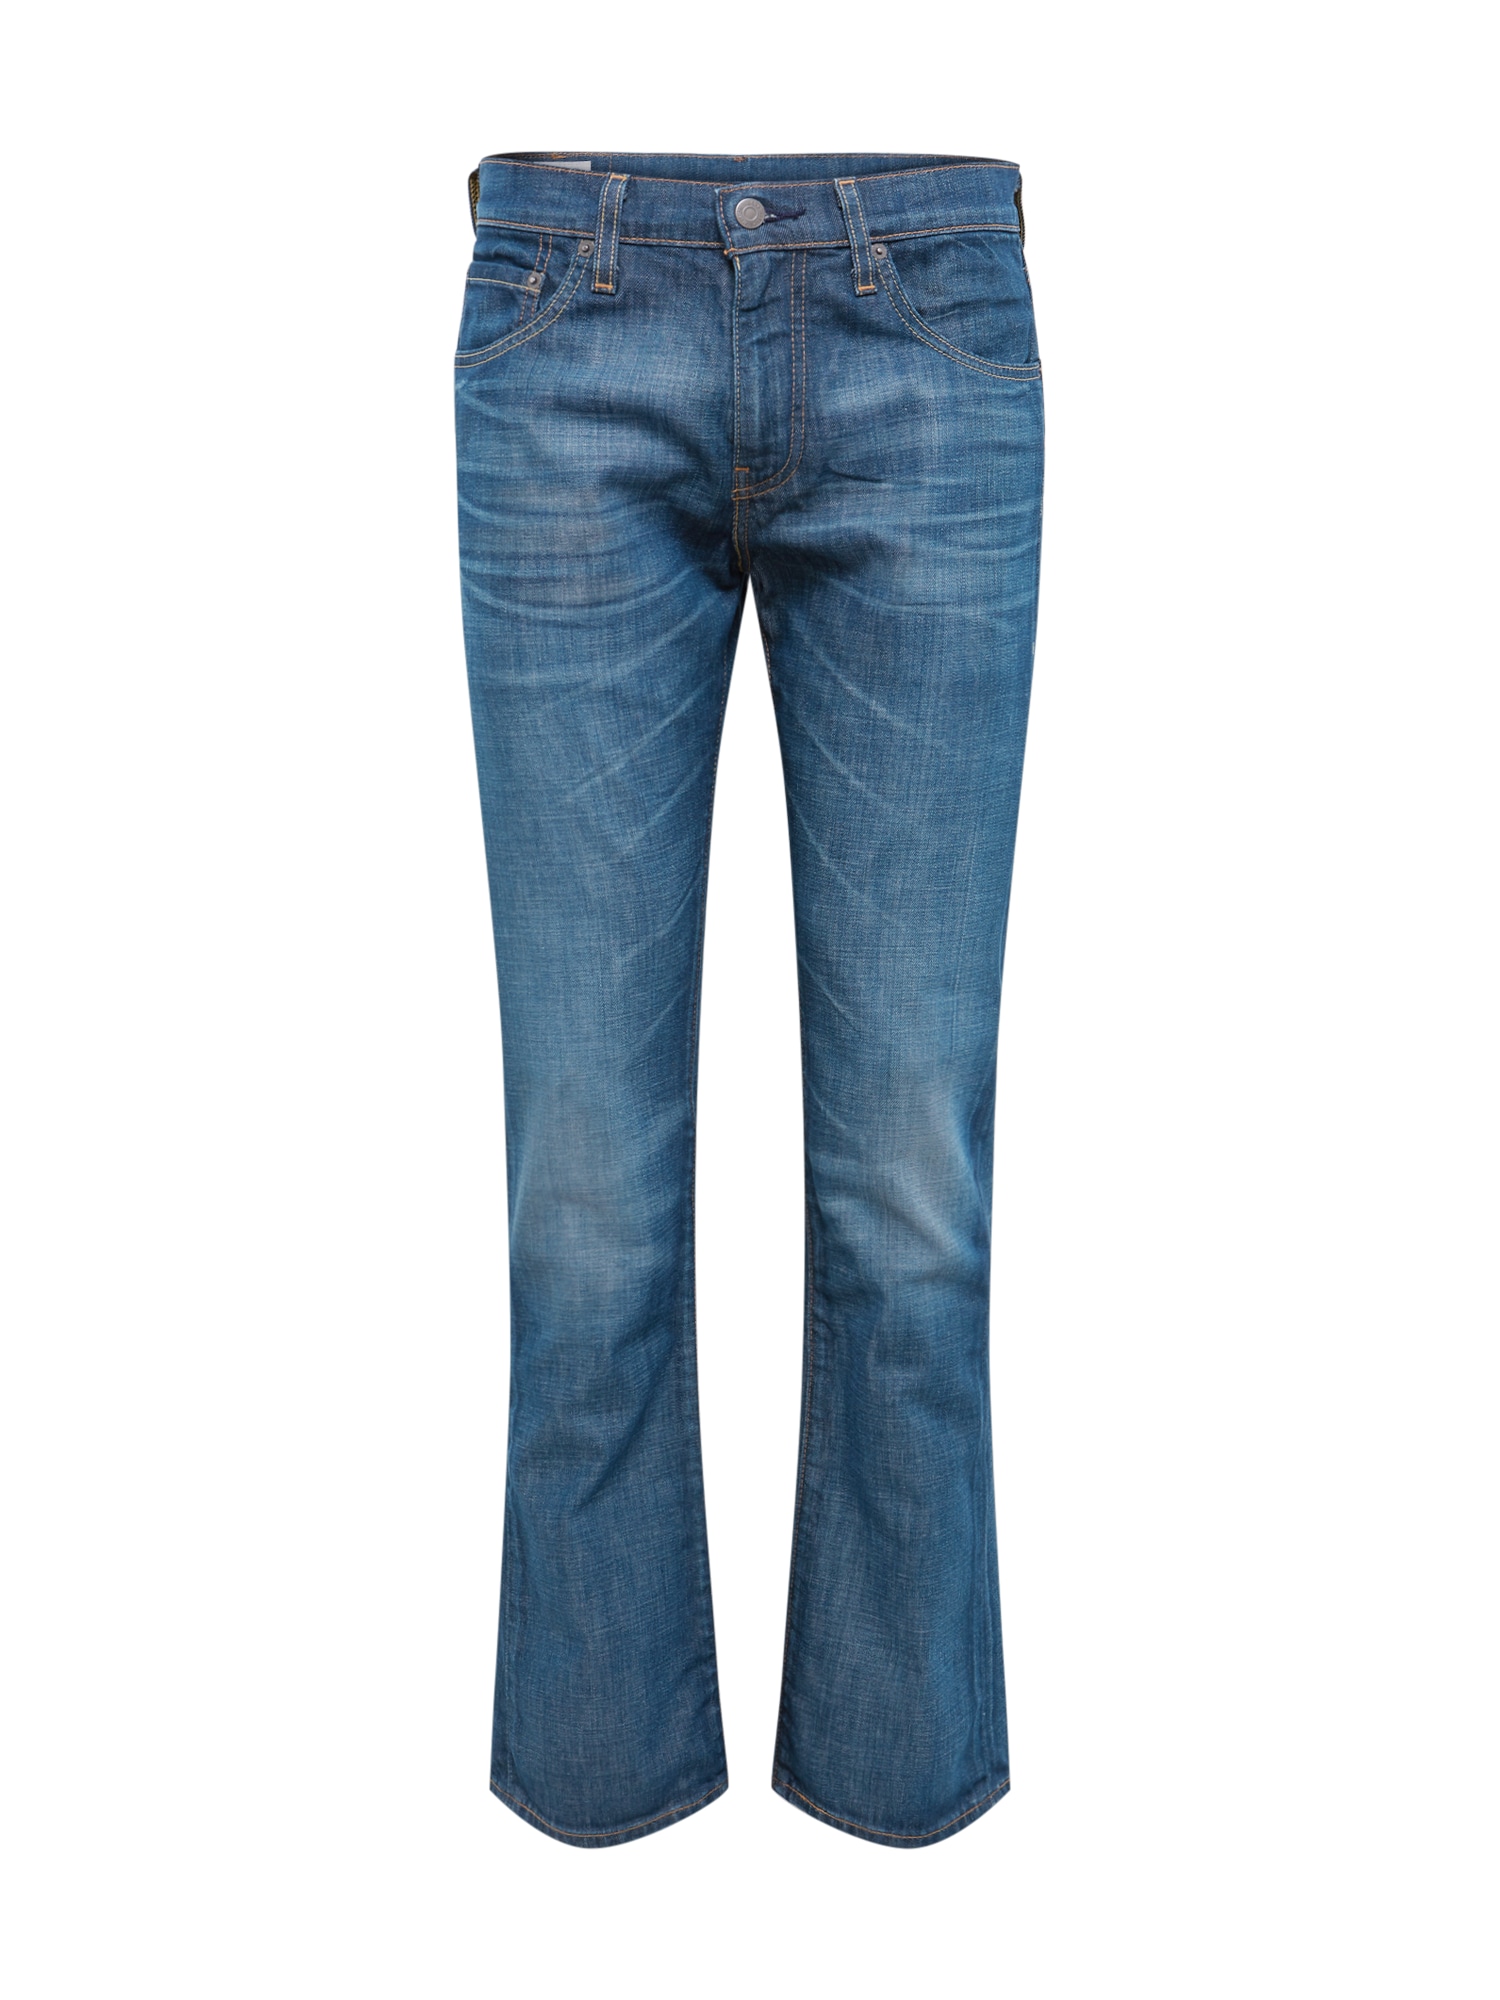 Jeans '527™' von Levis